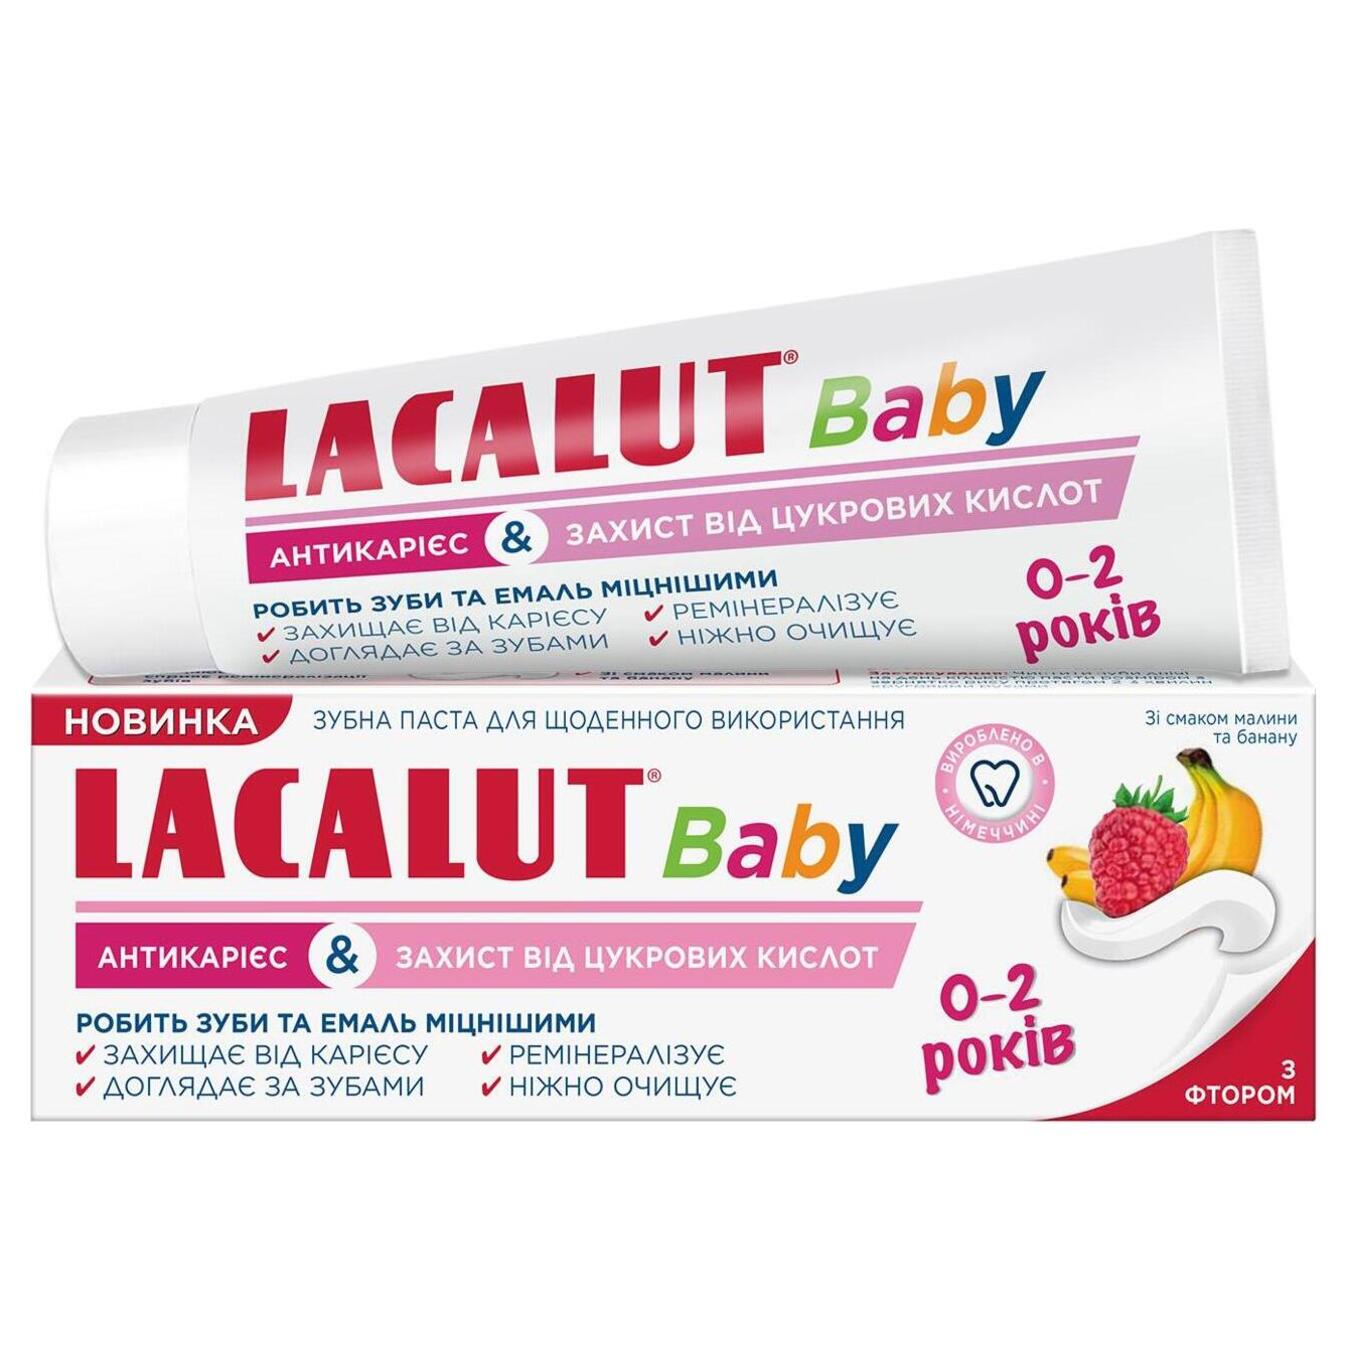 Паста зубна Lacalut Baby антикарієс і захист від цукрових кислот 55мл